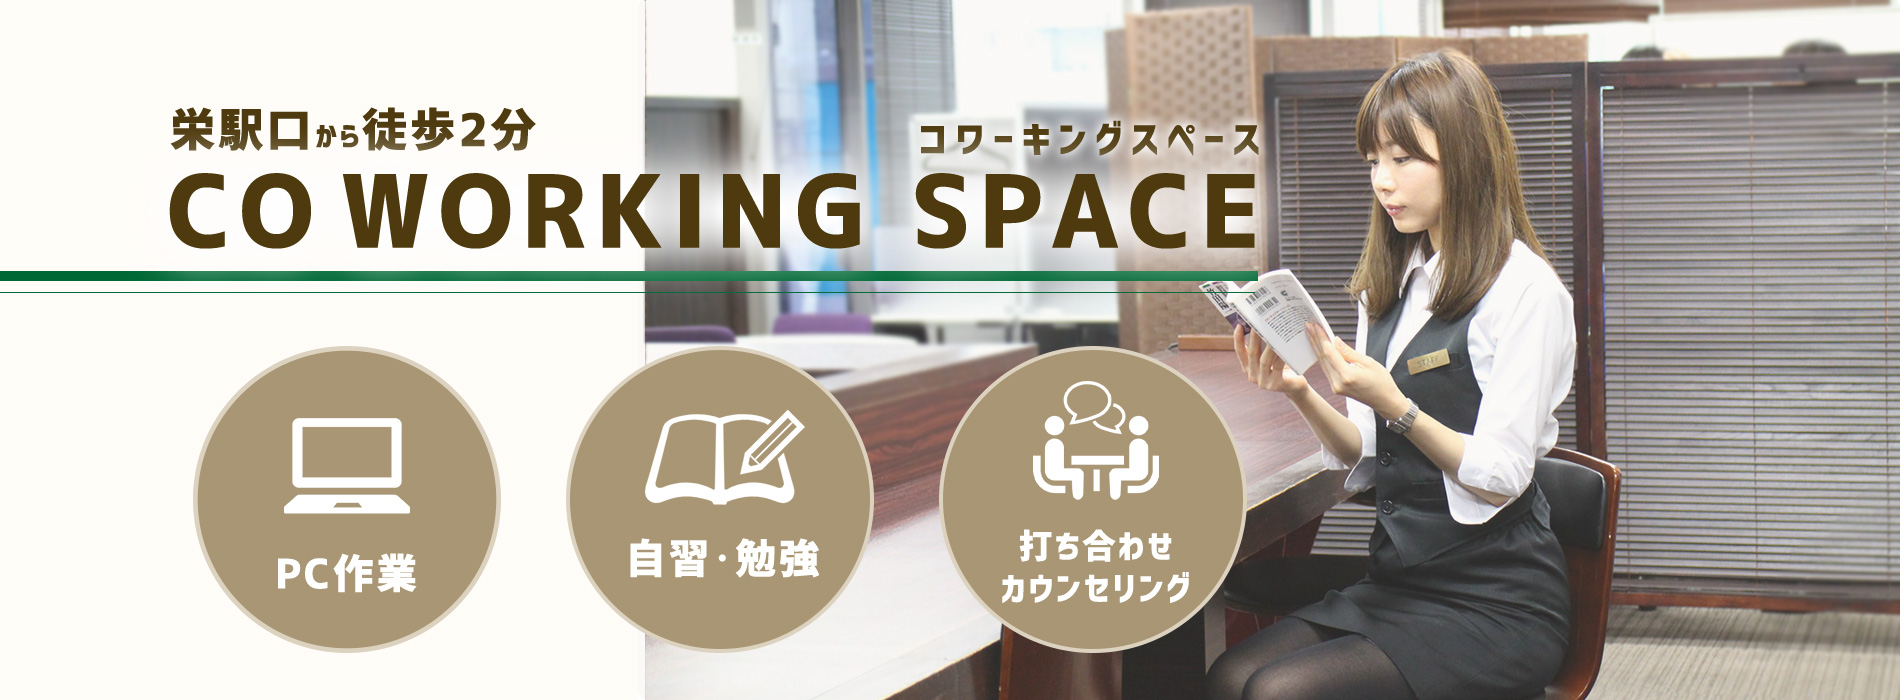 名古屋栄自習勉強できるコワーキングスペース